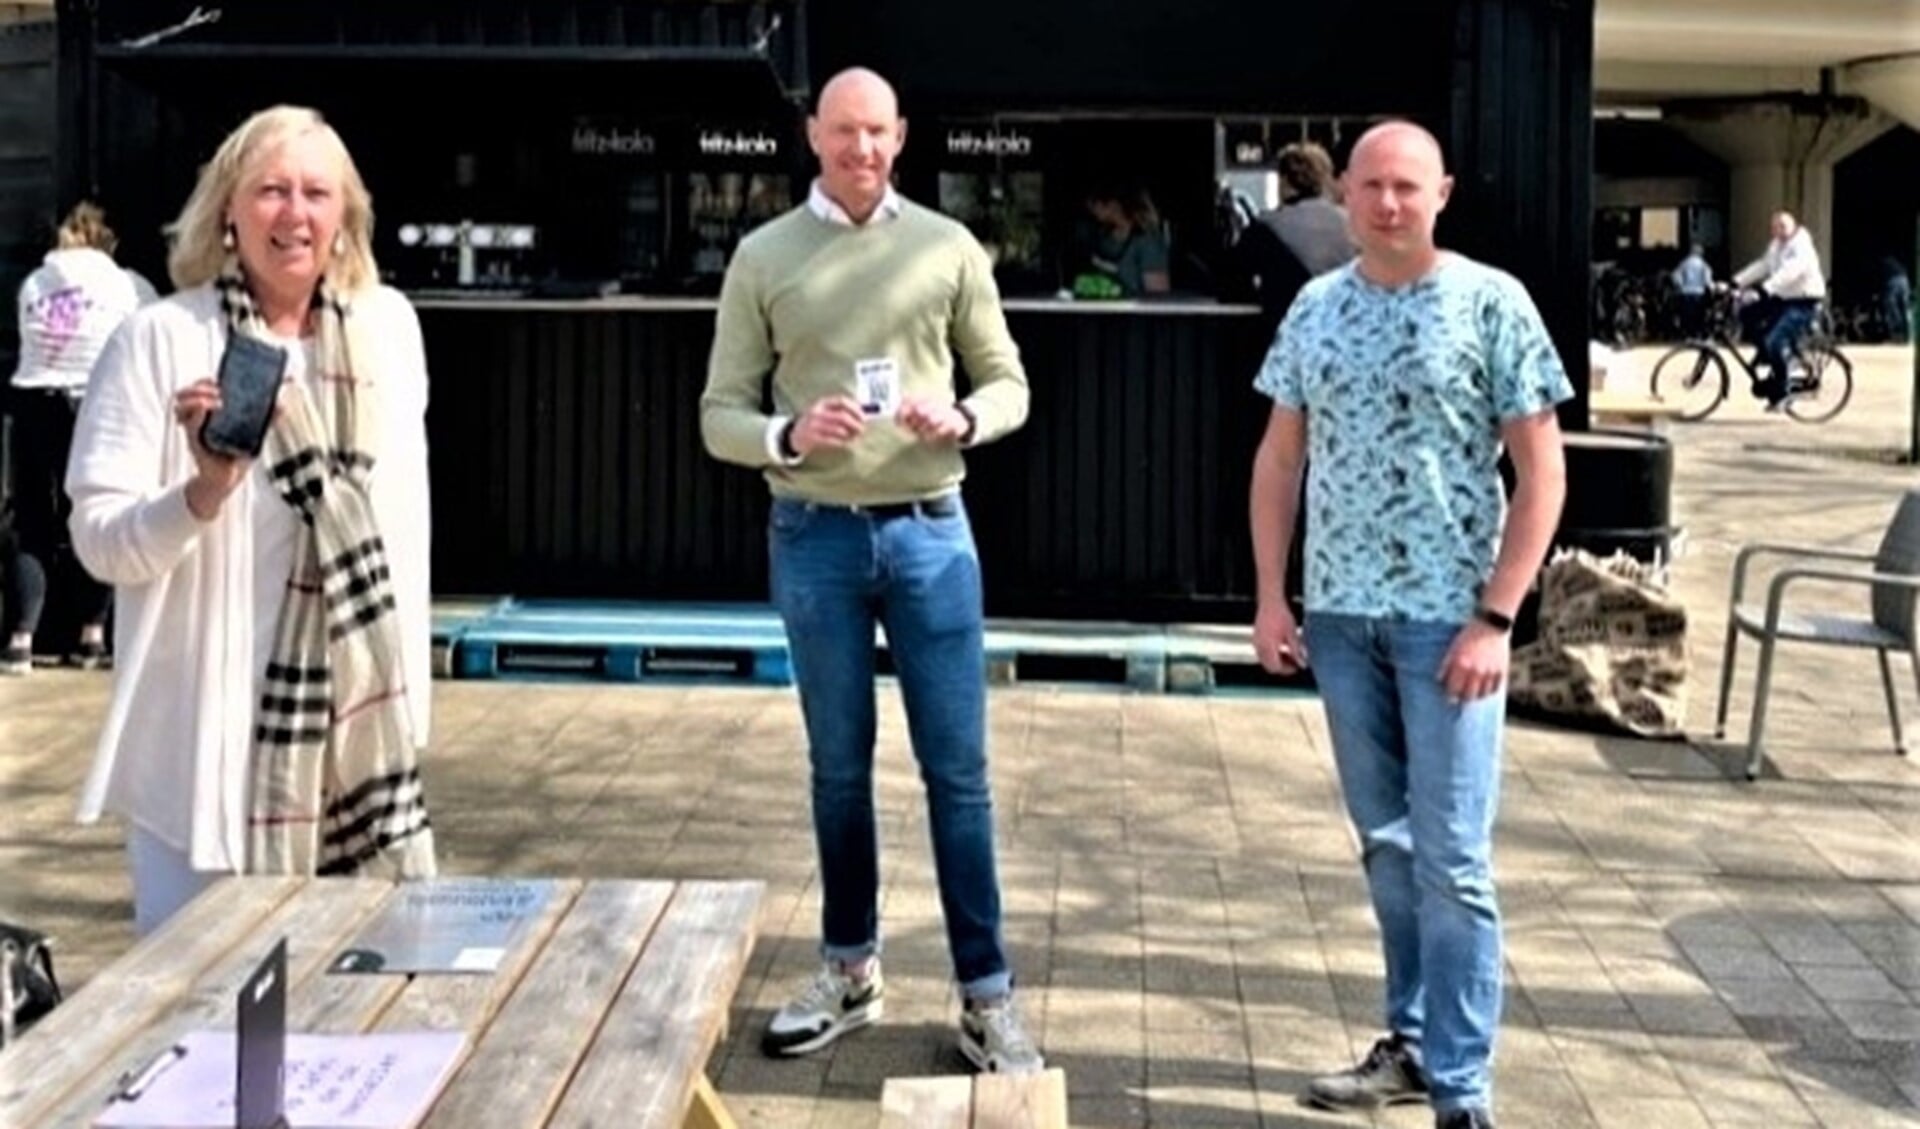 Wethouder Astrid van Eekelen toont app met de horecaondernemers Ricardo Houtman en Eddy Knopjes op Stationsplein (foto: gemeente).